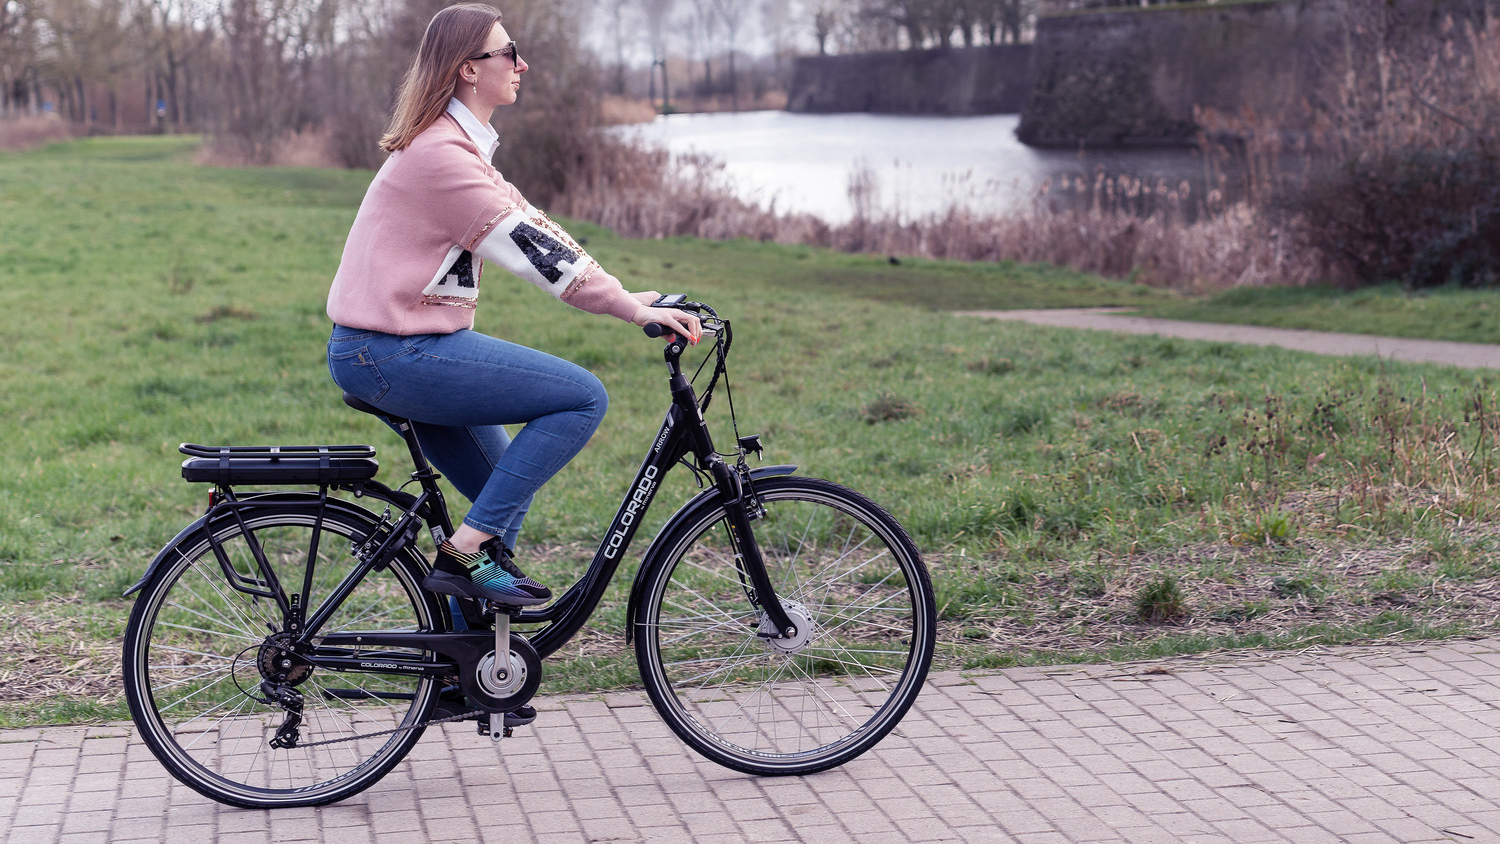 Kameraad Cater Moeras Lidl biedt flinke korting op deze 3 elektrische fietsen - WANT